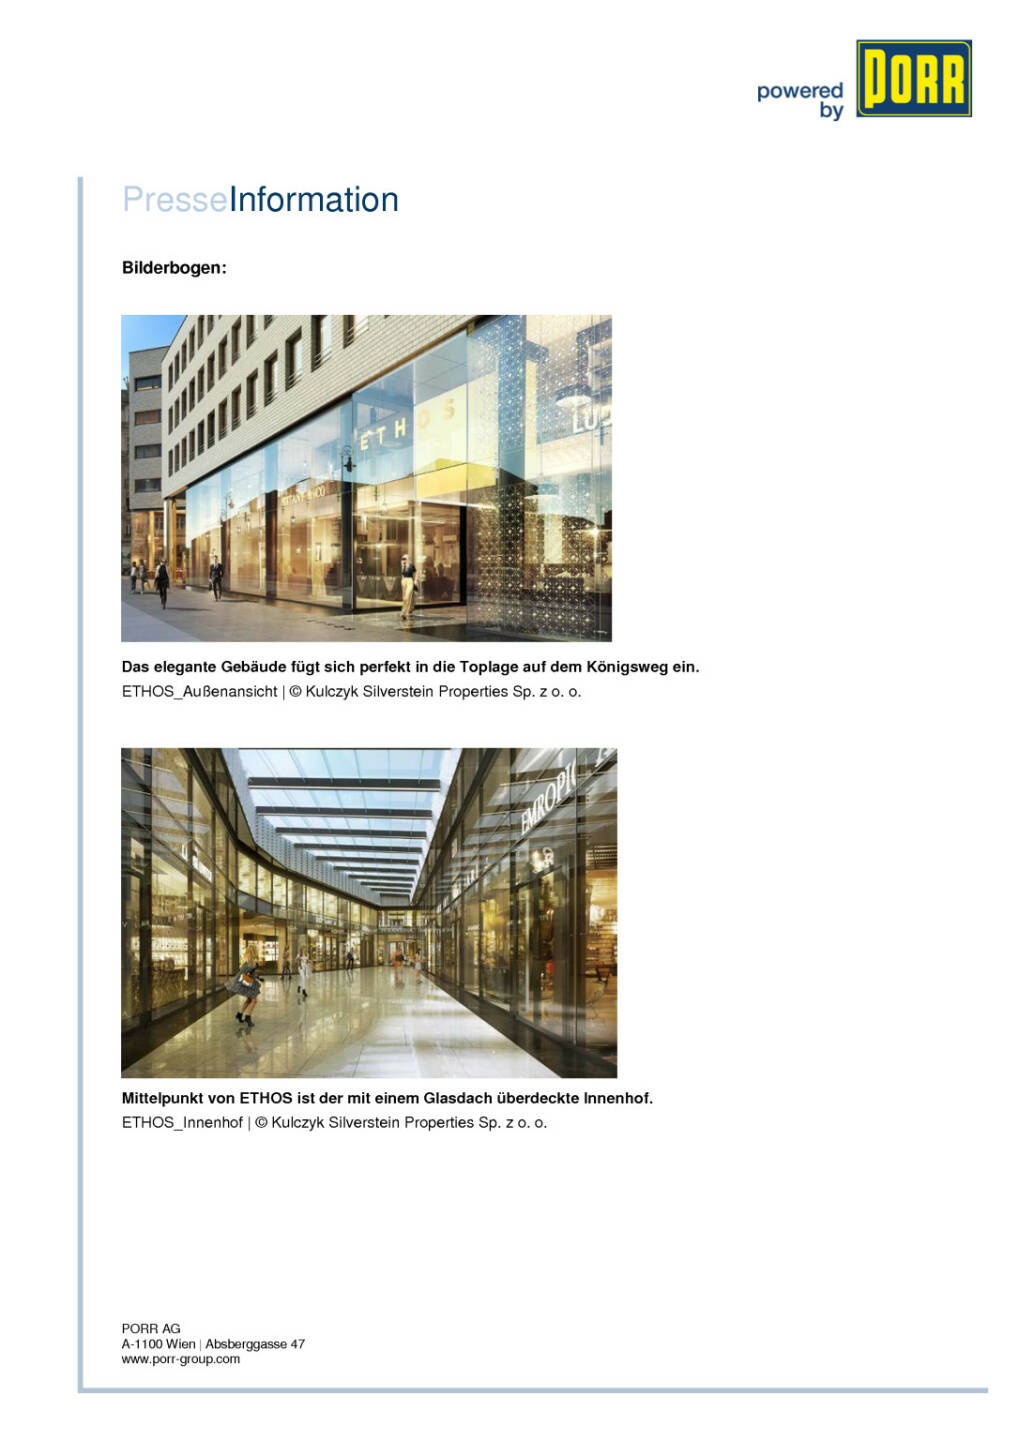 Porr errichtet Büro- und Geschäftskomplex Ethos in Warschau, Seite 2/2, komplettes Dokument unter http://boerse-social.com/static/uploads/file_281_porr_errichtet_buro-_und_geschaftskomplex_ethos_in_warschau.pdf